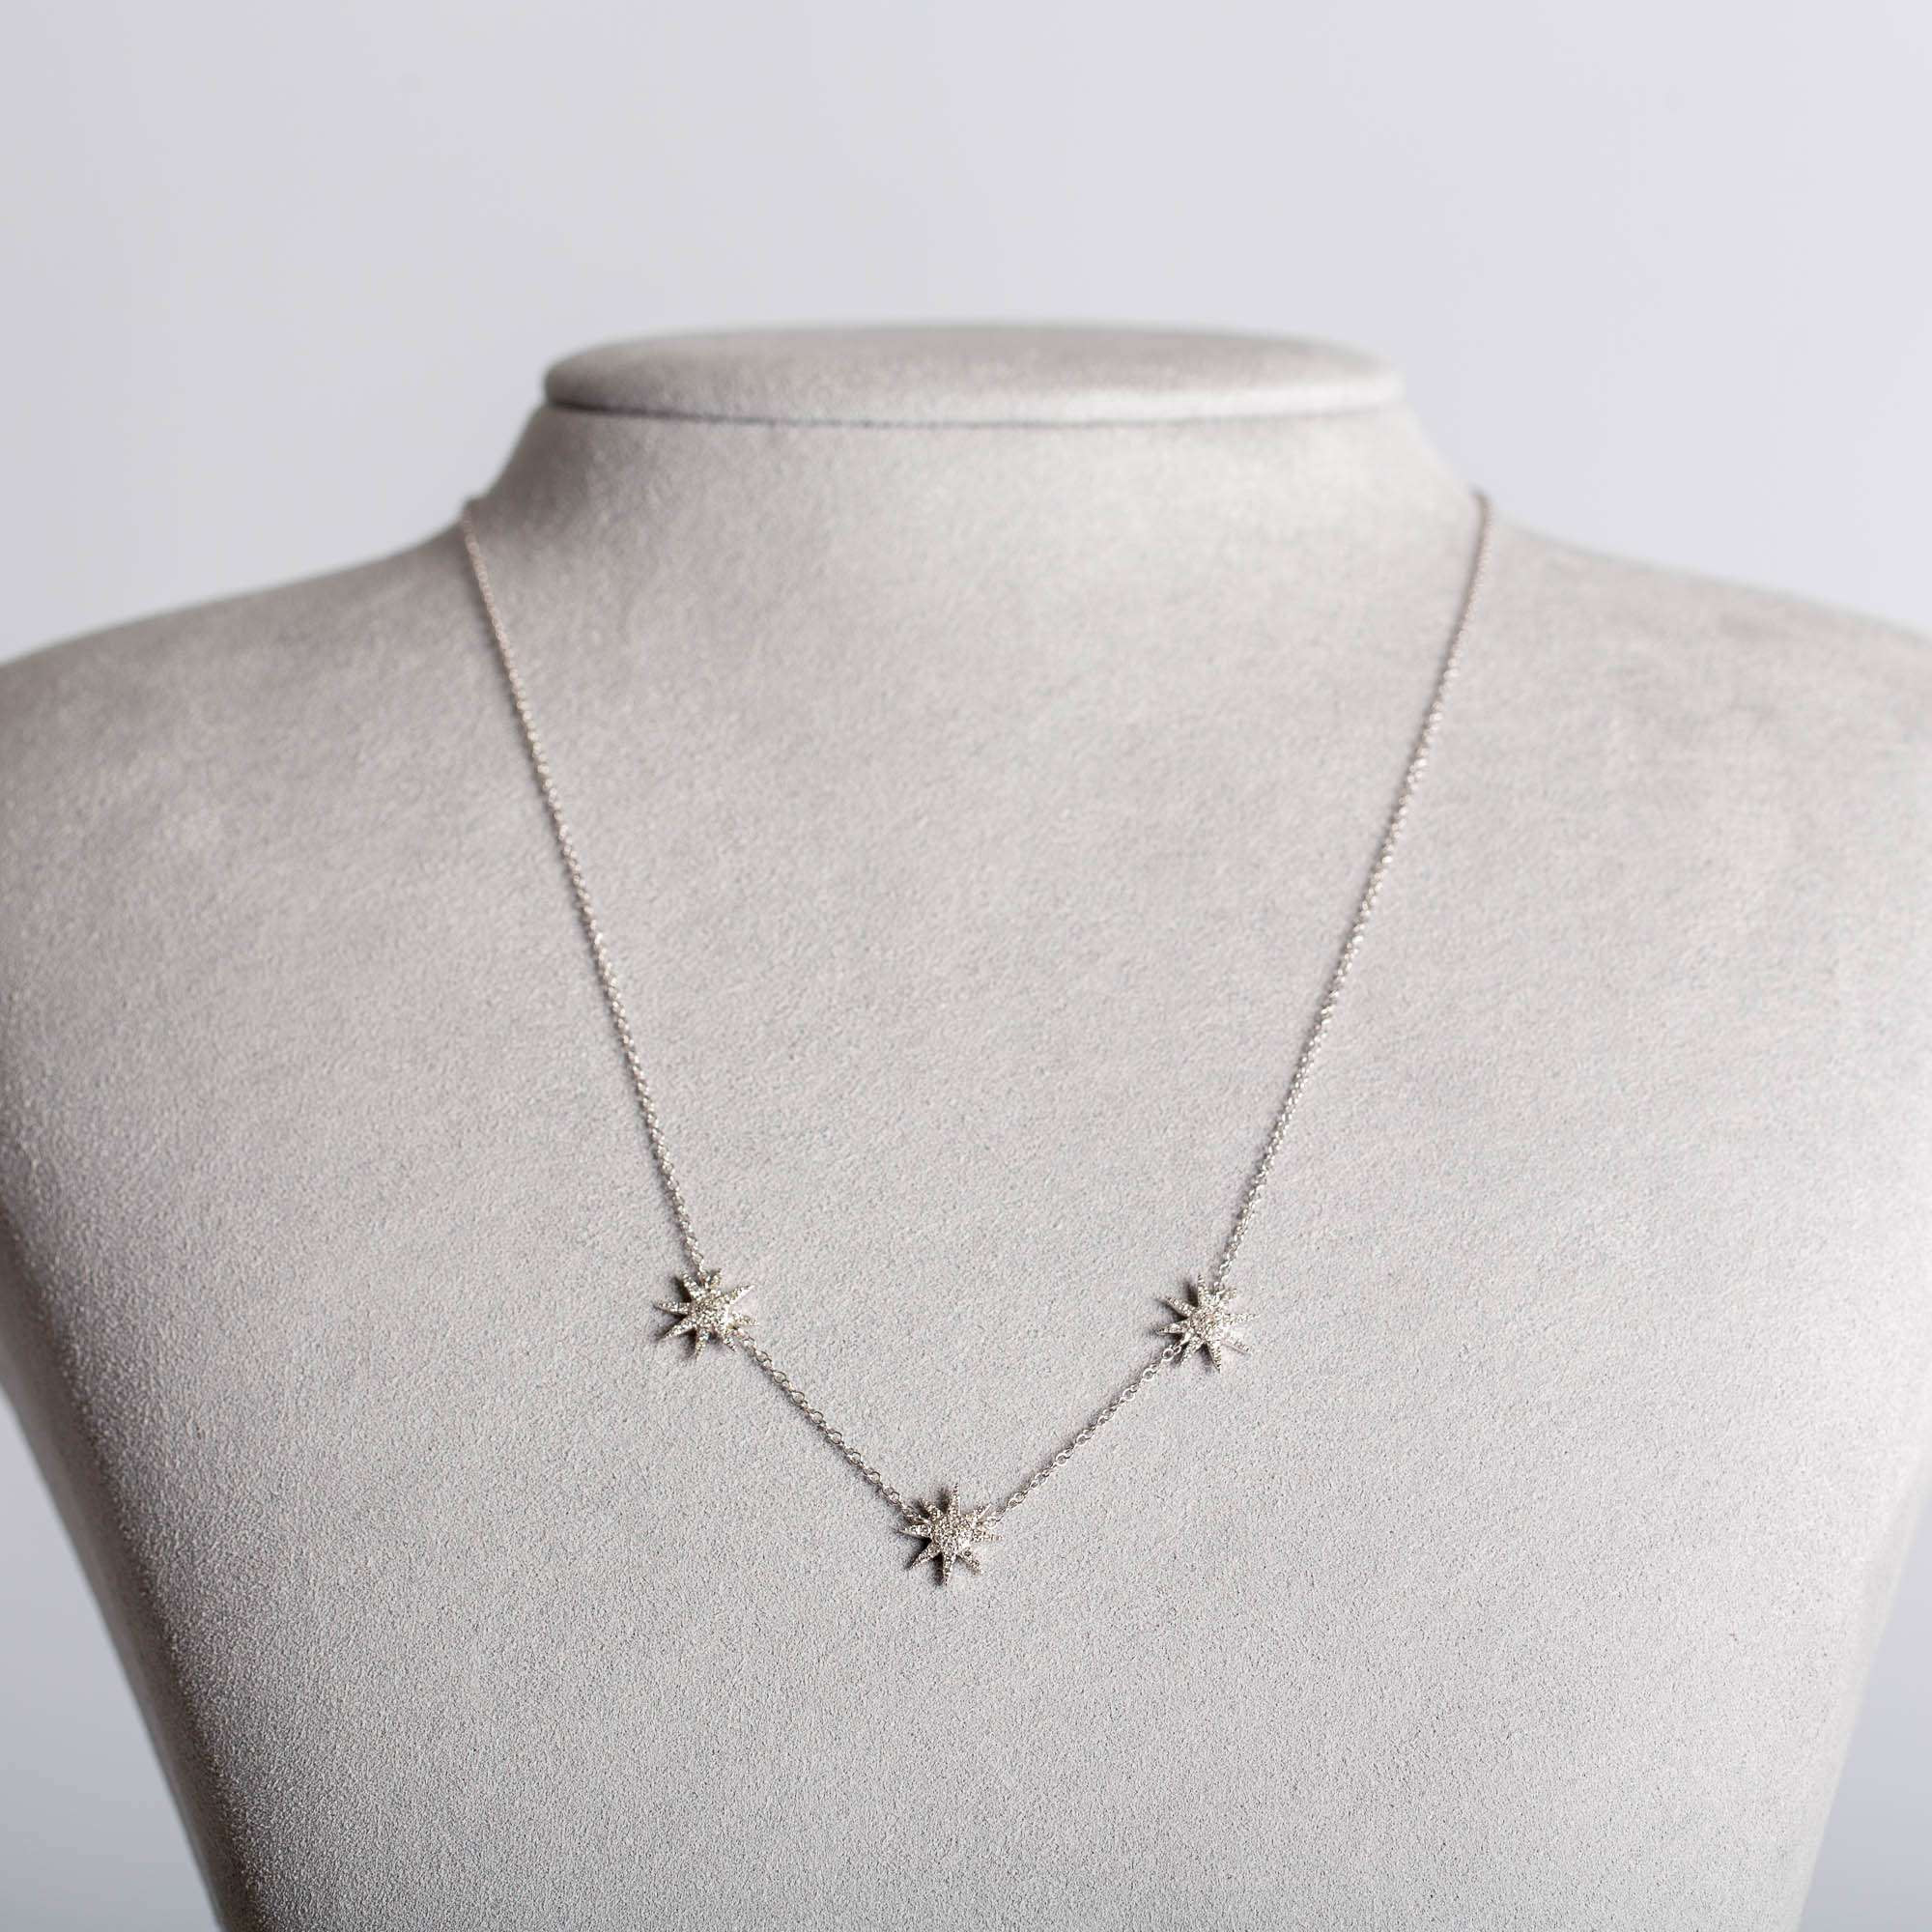 Diamant-Halskette mit dreifachem 8-zackigem Stern | 14K Weissgold 1